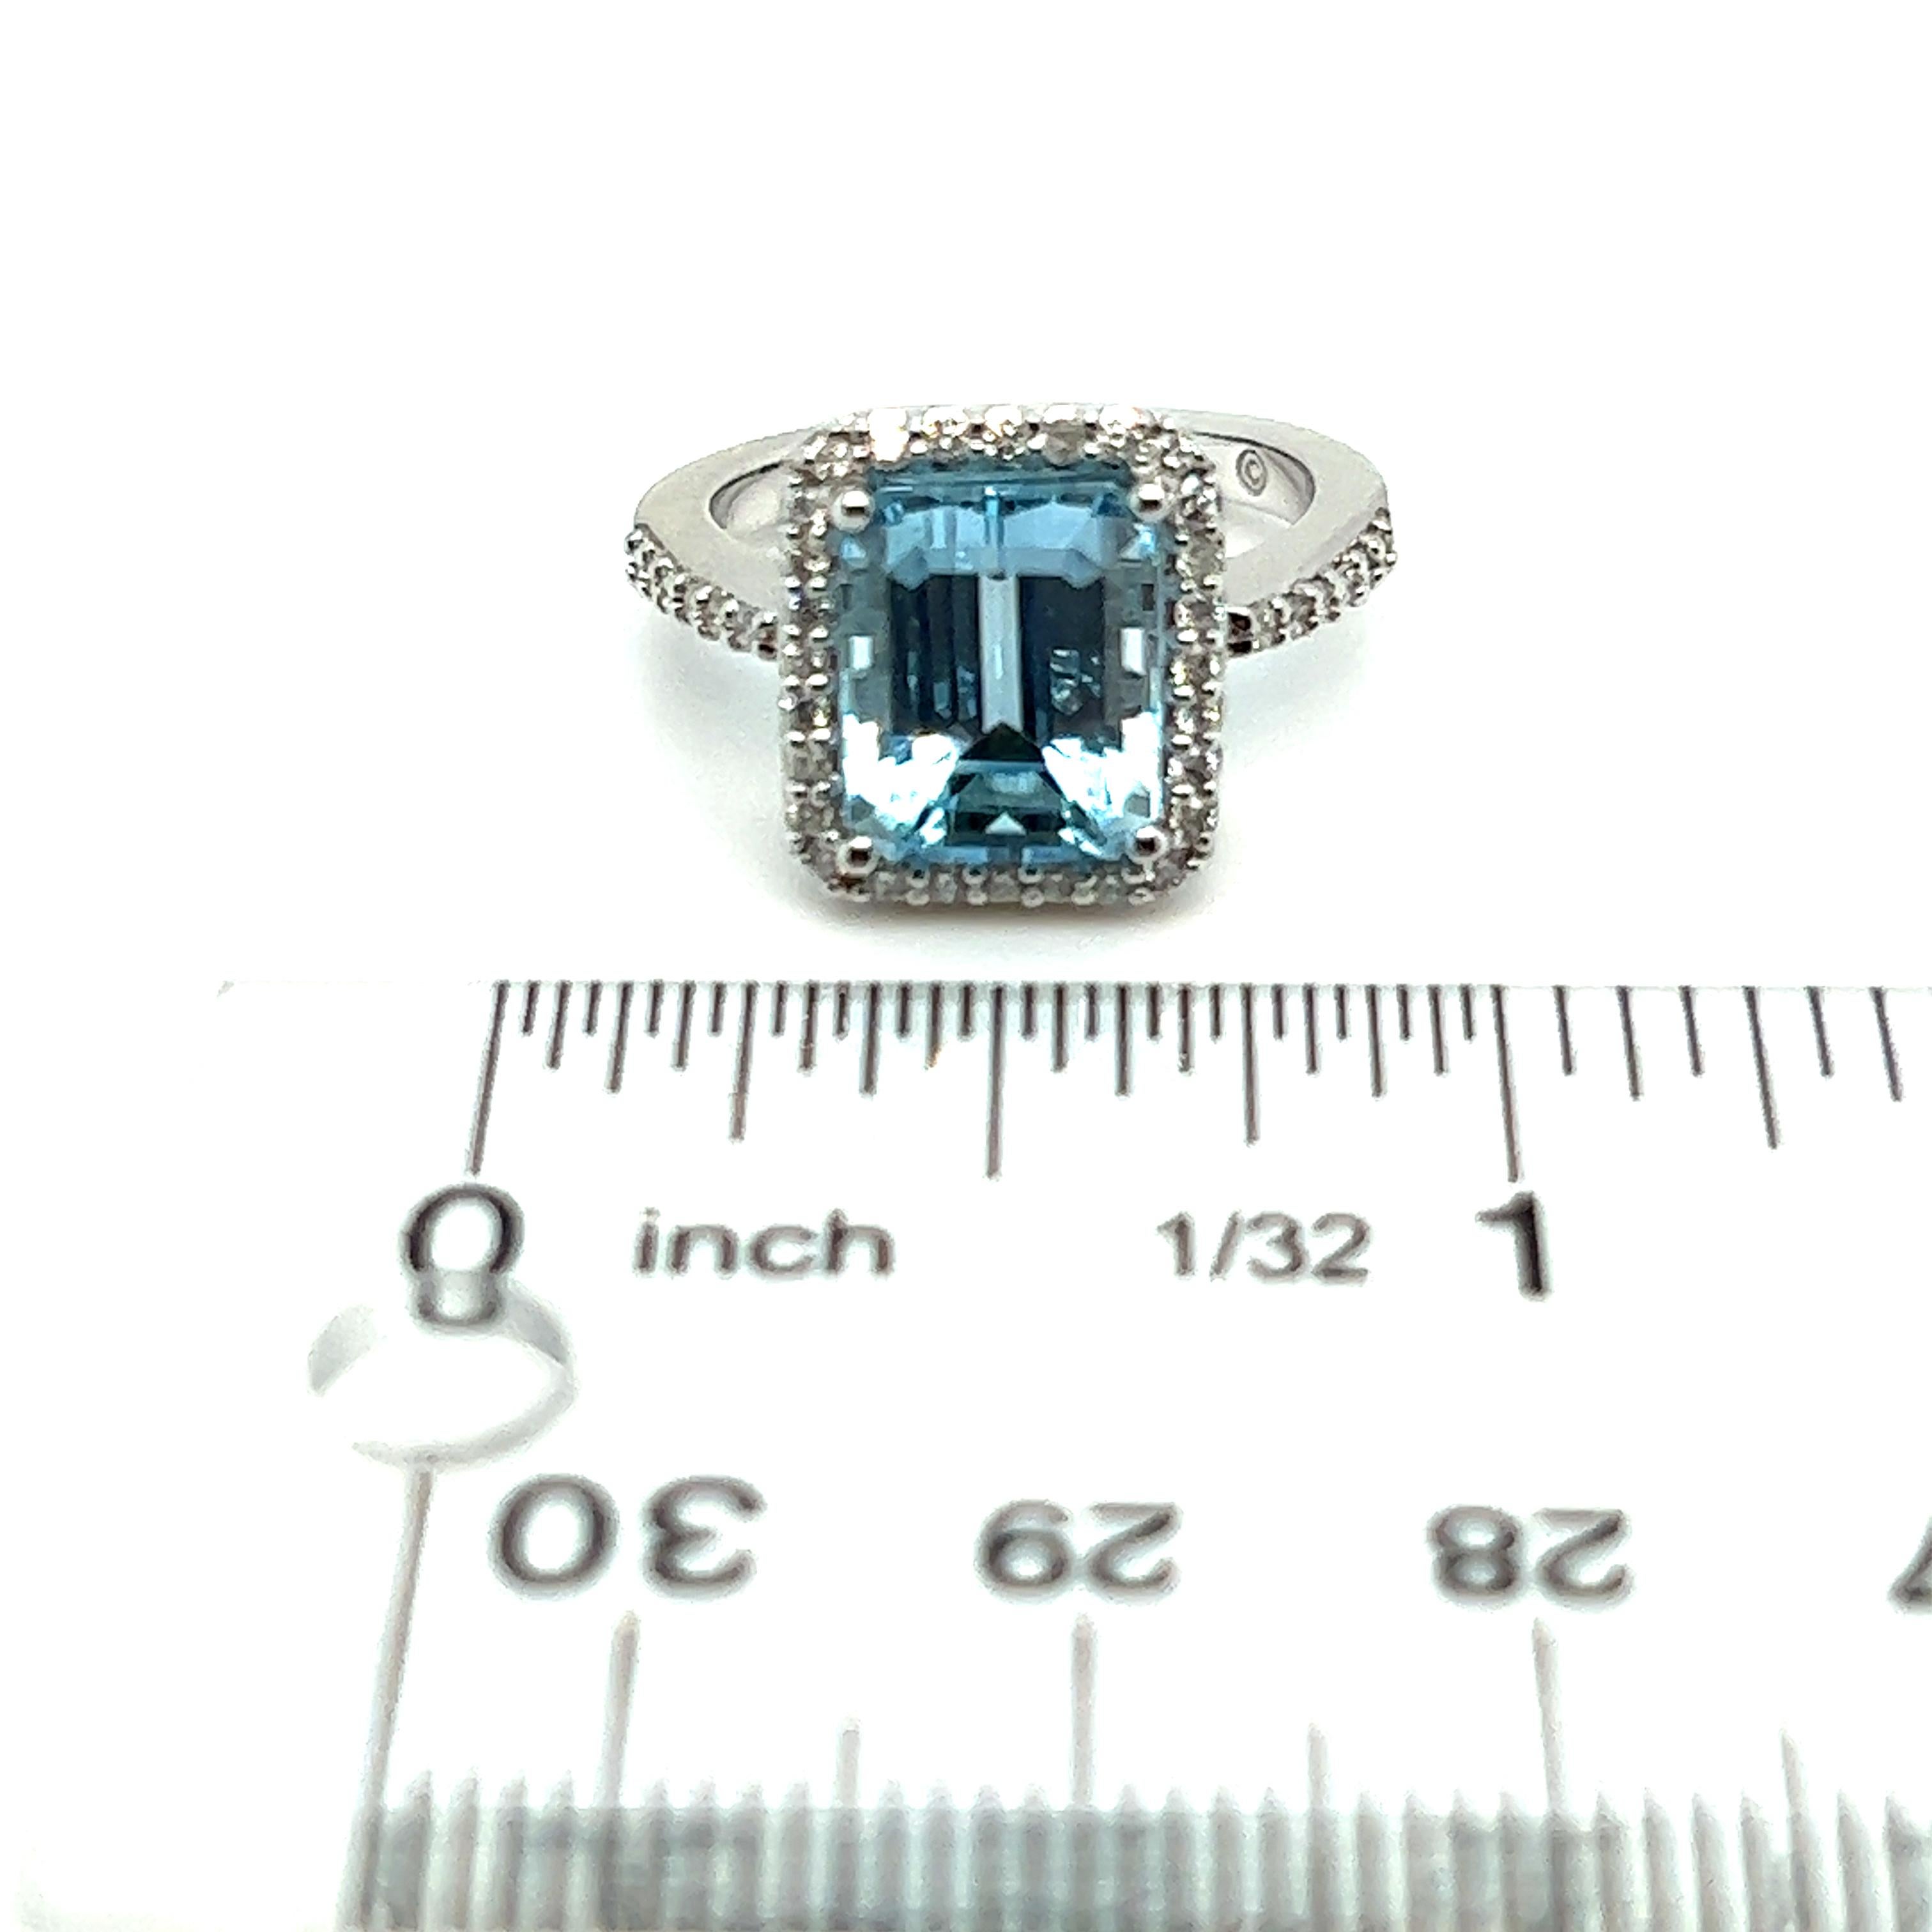 Natürliche fein facettiert Qualität Topas Diamant Ring 6,5 14k W Gold 5,1 TCW zertifiziert $3.950 308482

Dies ist ein einzigartiges, maßgeschneidertes, glamouröses Schmuckstück!

Nichts sagt mehr 